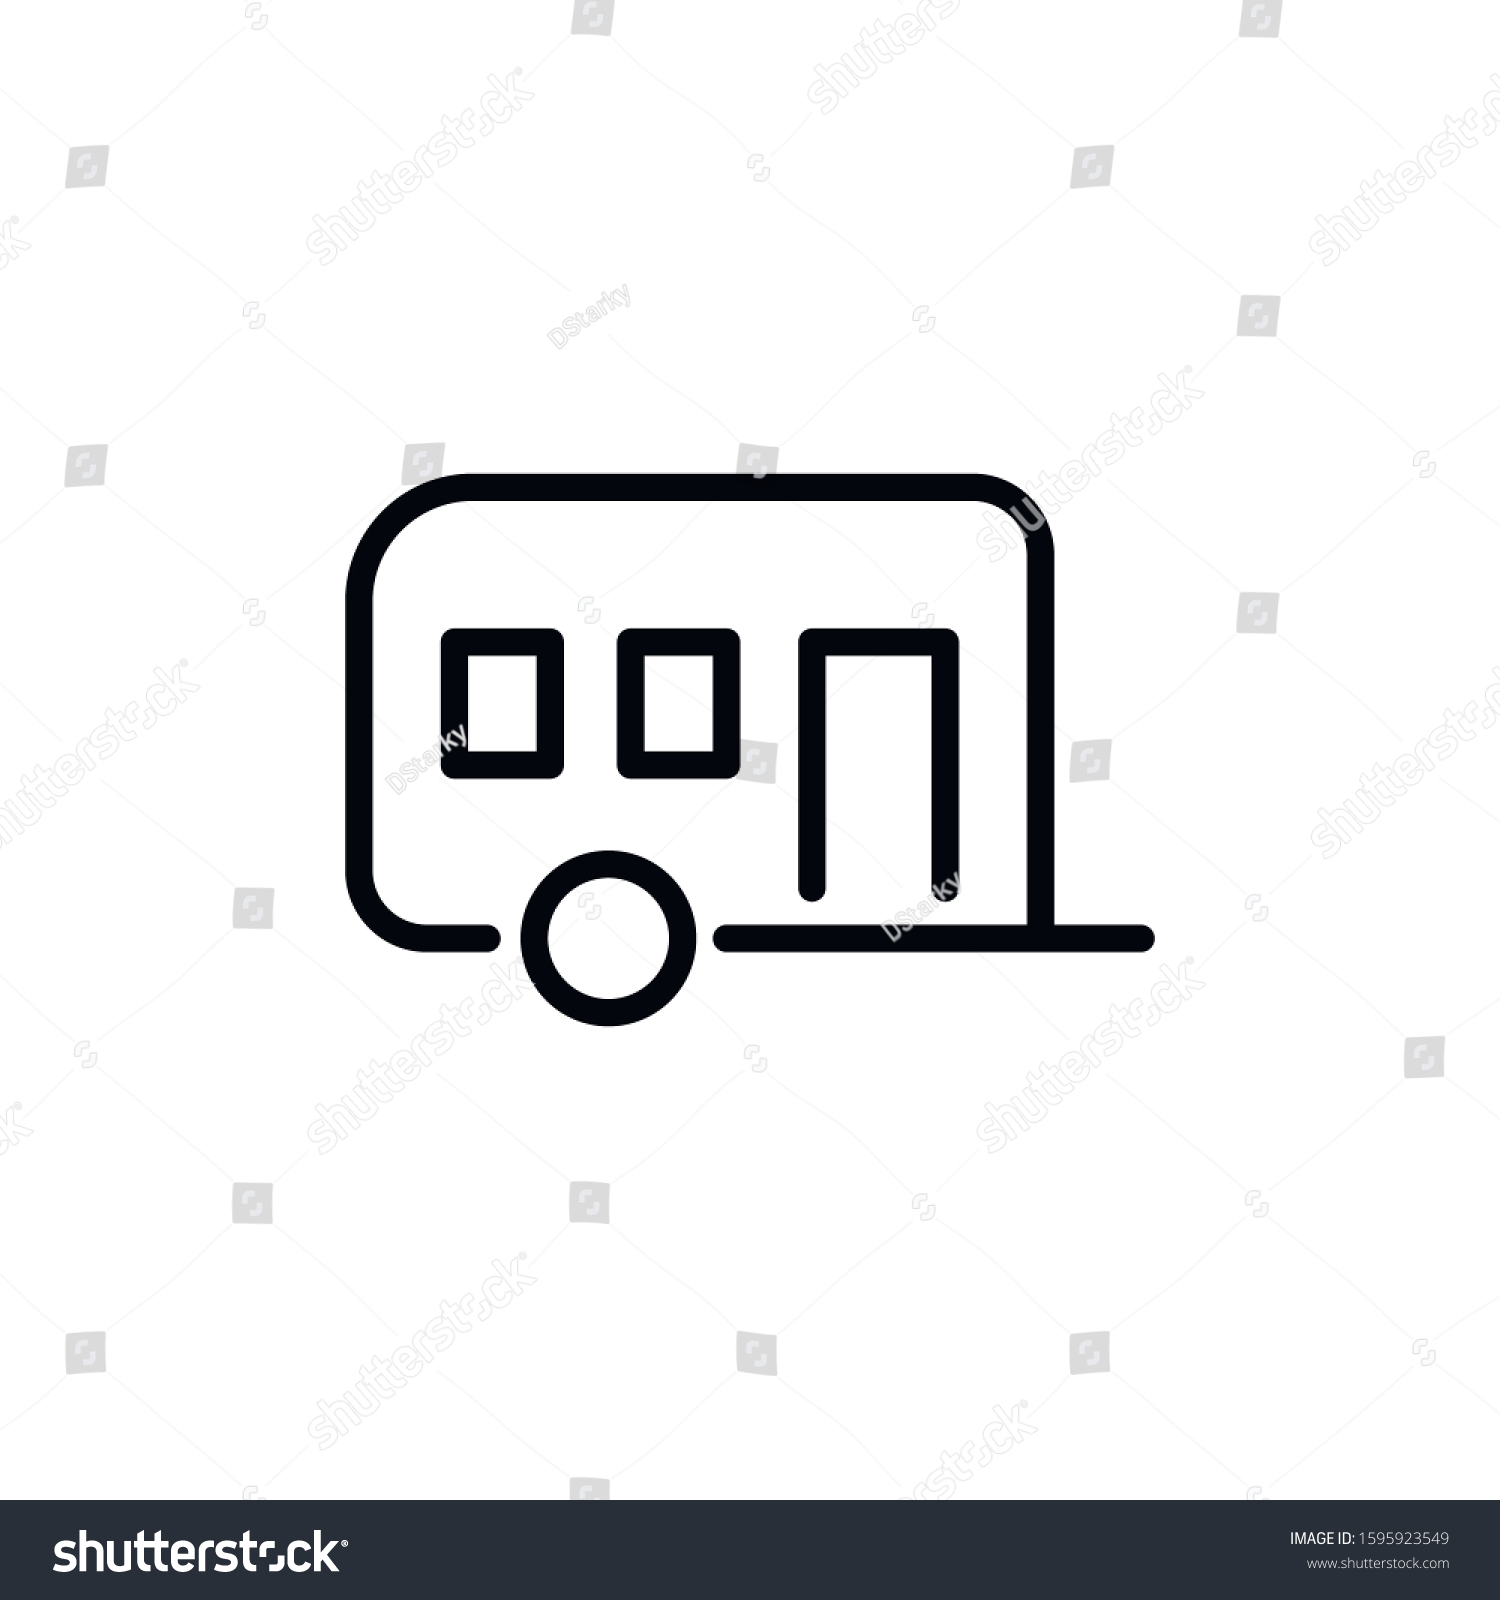 Simple Caravan Line Icon Stroke Pictogram Stock Vector (Royalty Free ...